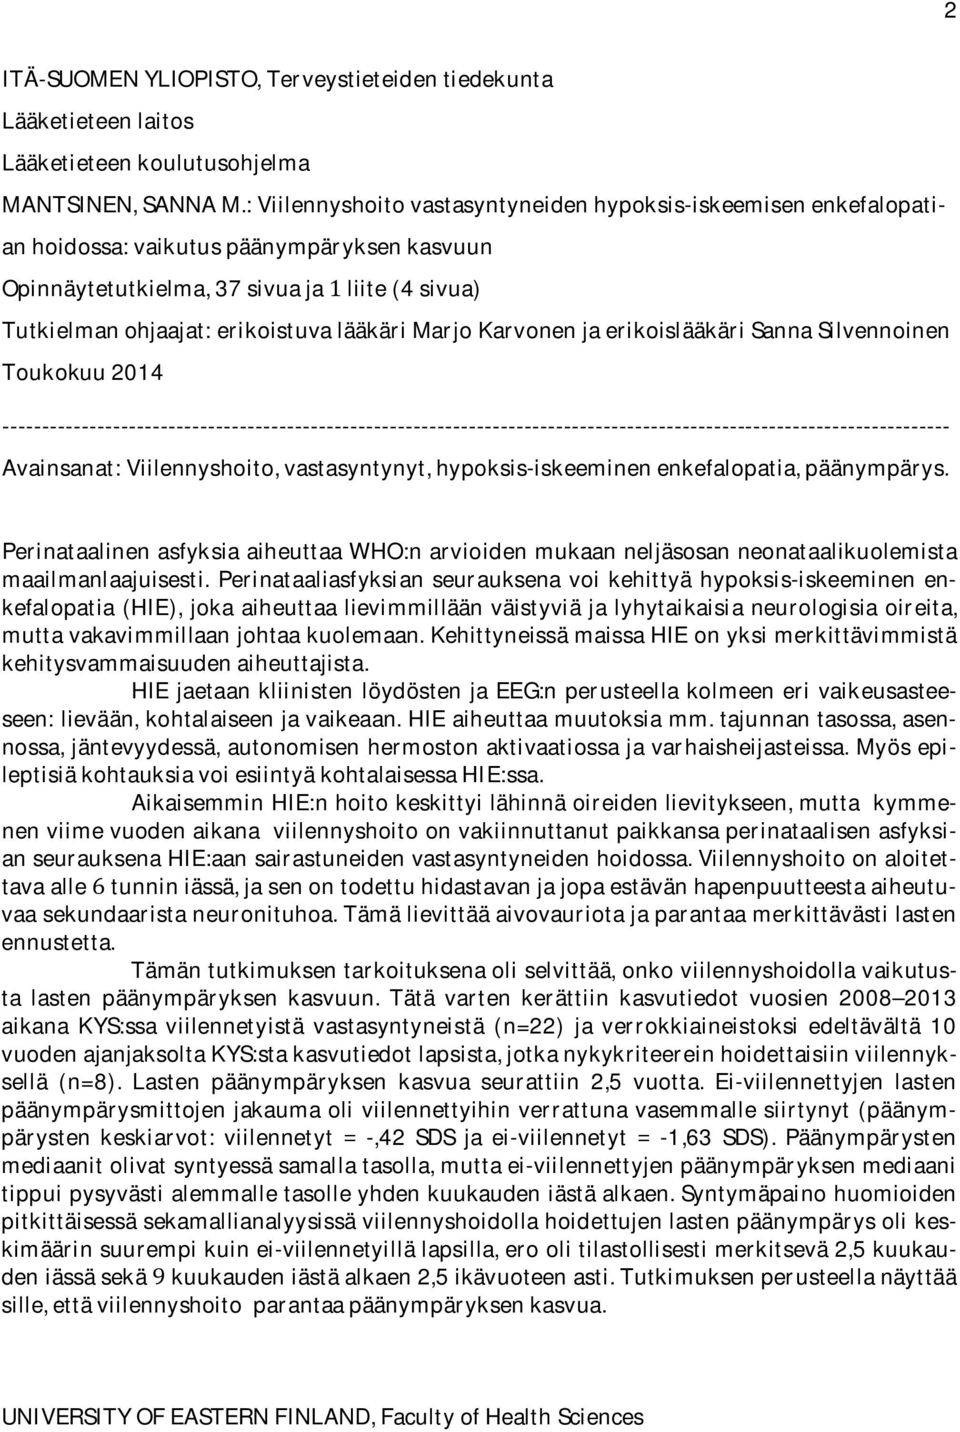 Tutkielmanohjaajat:erikoistuvalääkäriMarjoKarvonenjaerikoislääkäriSannaSilvennoinen Toukokuu2014